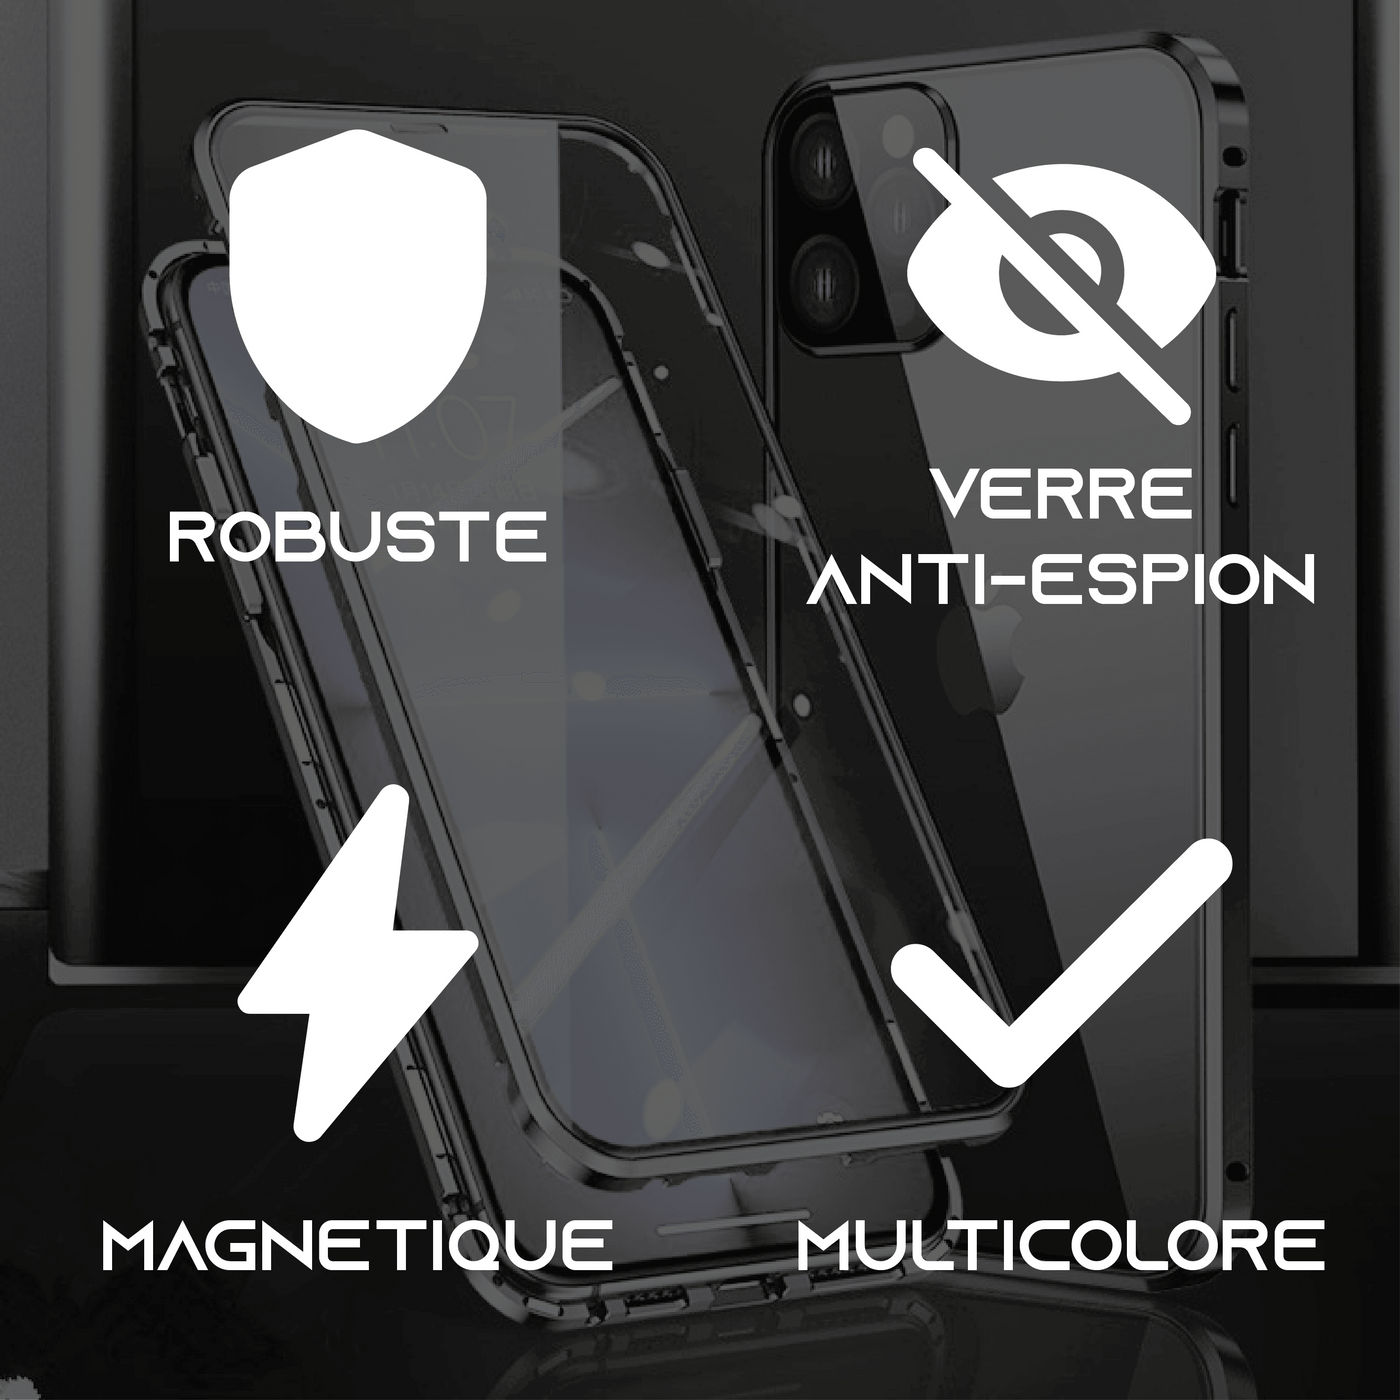 PrivateVault | Coque Iphone robuste anti-espion - Zevessa